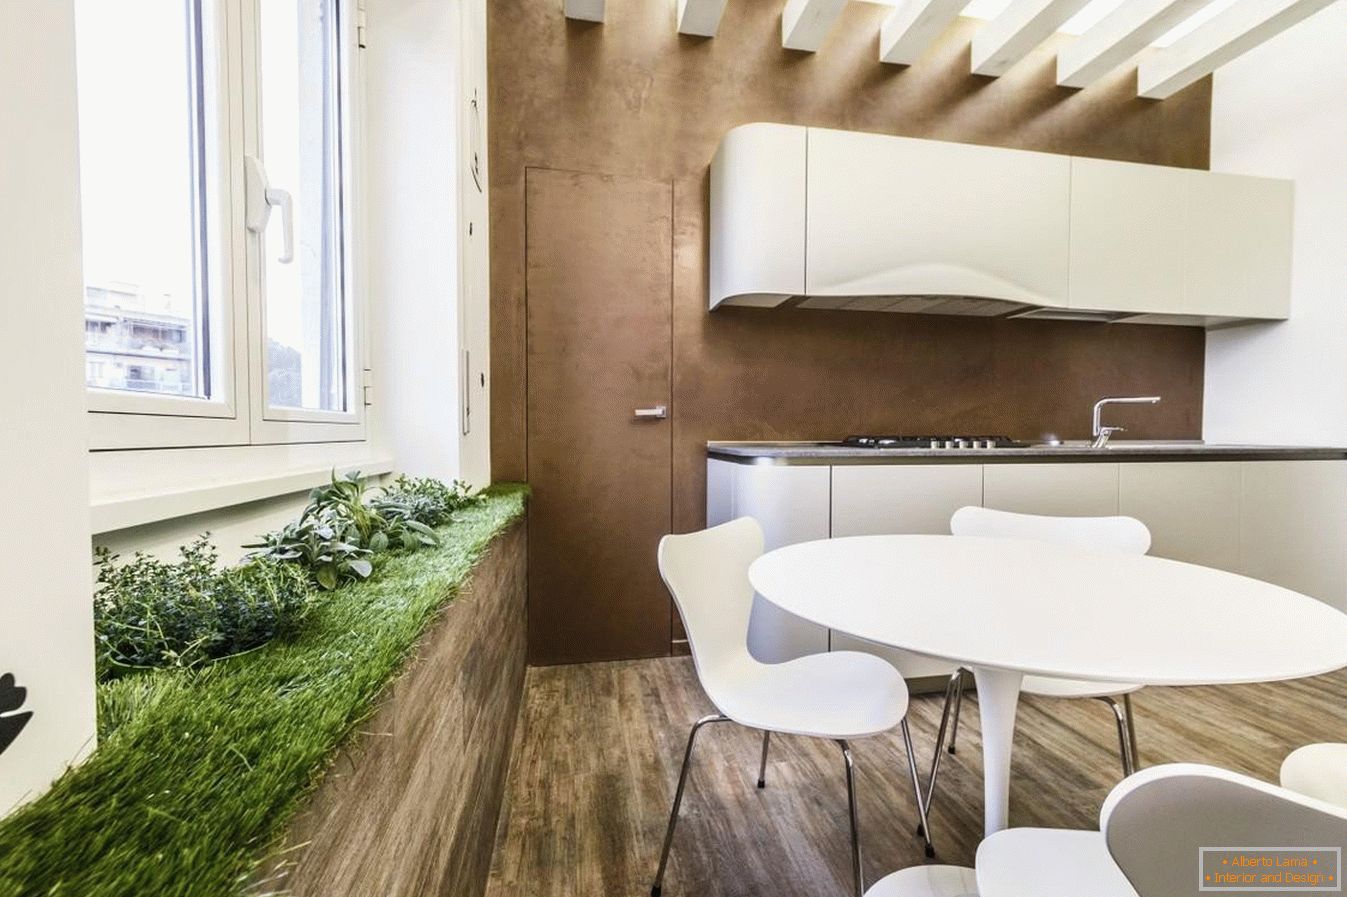 Área verde en la cocina para el estilo ecológico